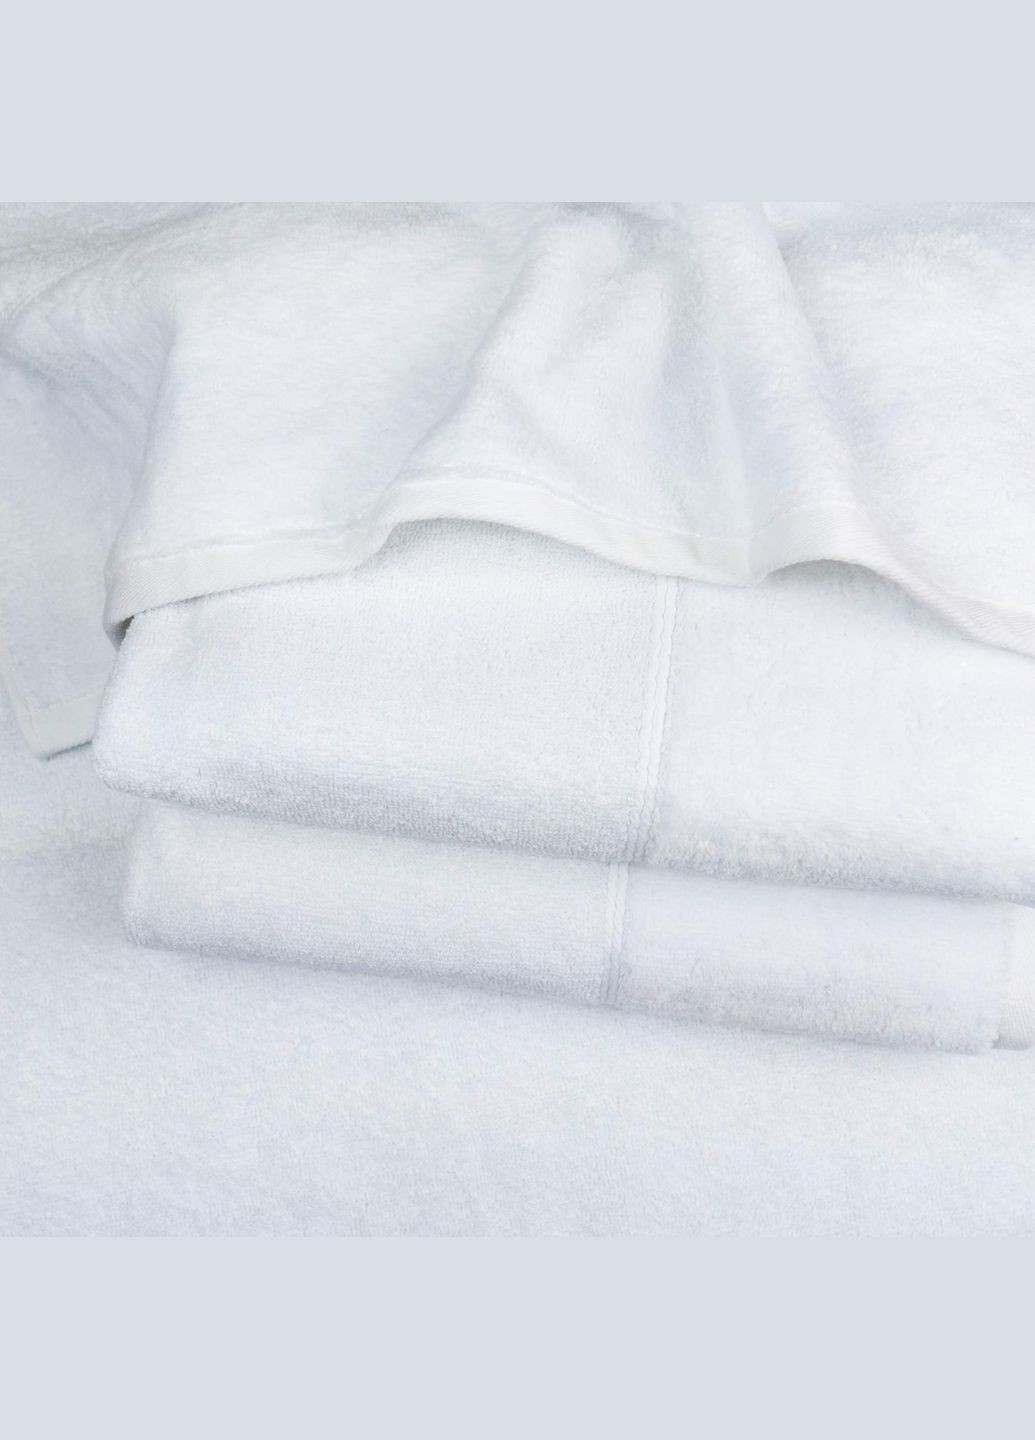 GM Textile банний рушник махра/велюр 70x140см преміум якості milado 550г/м2 (білий) білий виробництво -